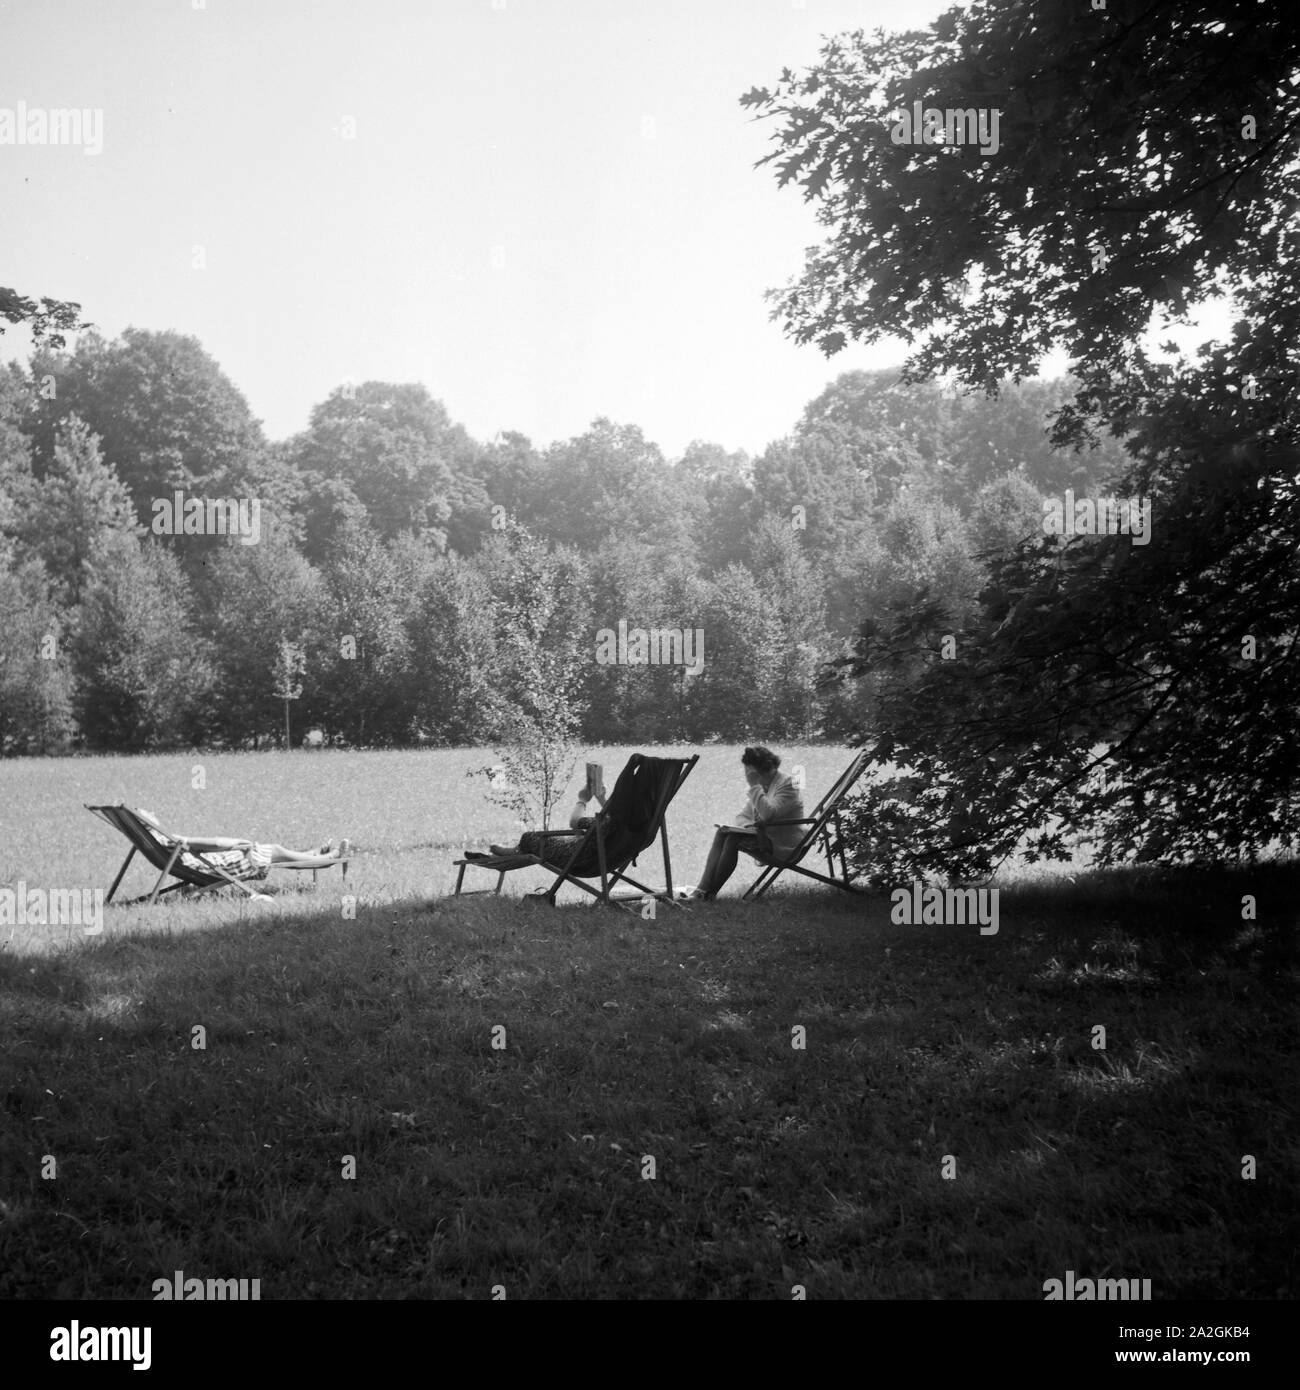 Artikel Kurgäste in Sonnenstühlen im Kurpark von Bad Homburg, Deutschland 1930er Jahre. Spa entspannen Sie auf Liegestühlen in der Sonne in Bad Homburg, Deutschland 1930. Stockfoto